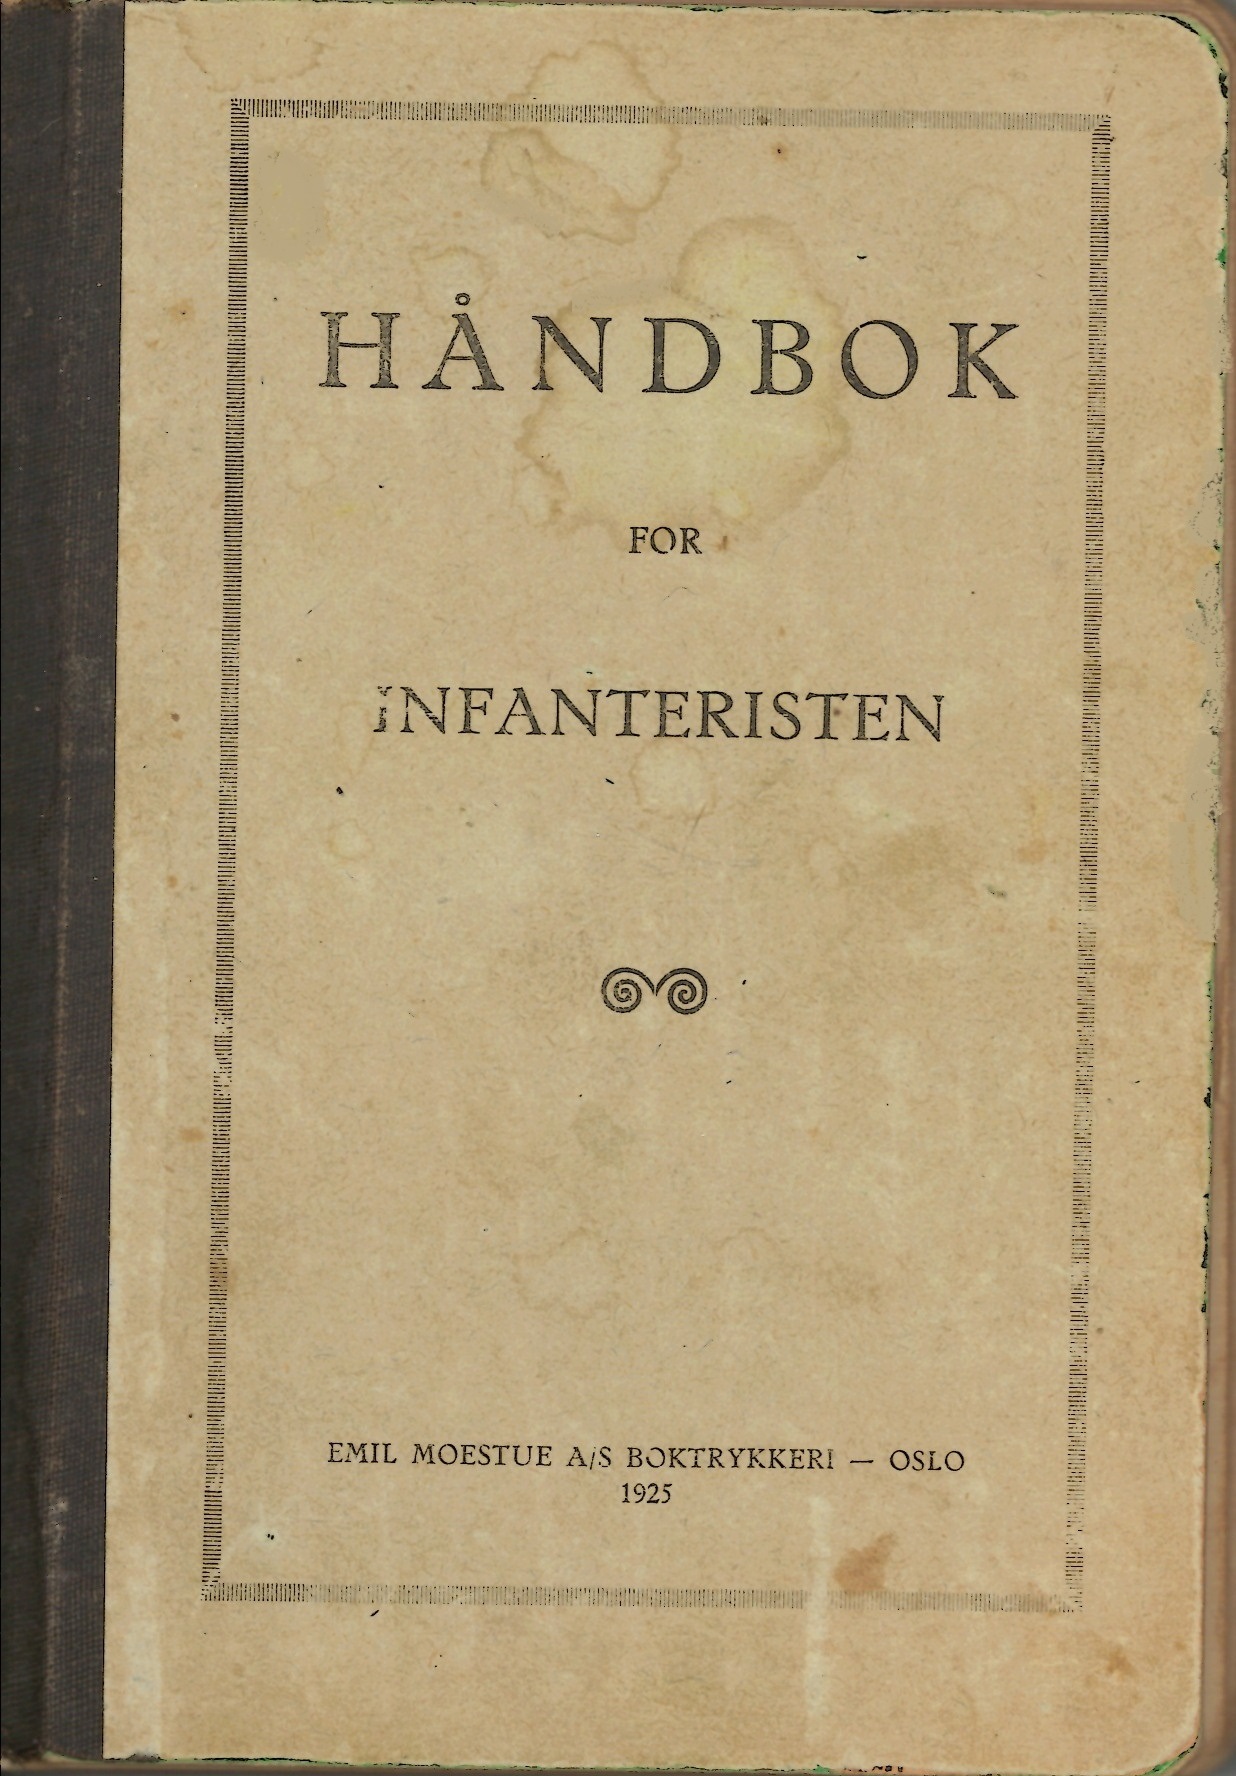 ./doc/reglement/Haandbok1925/Haandbok-for-infanteristen-1925-1.jpg